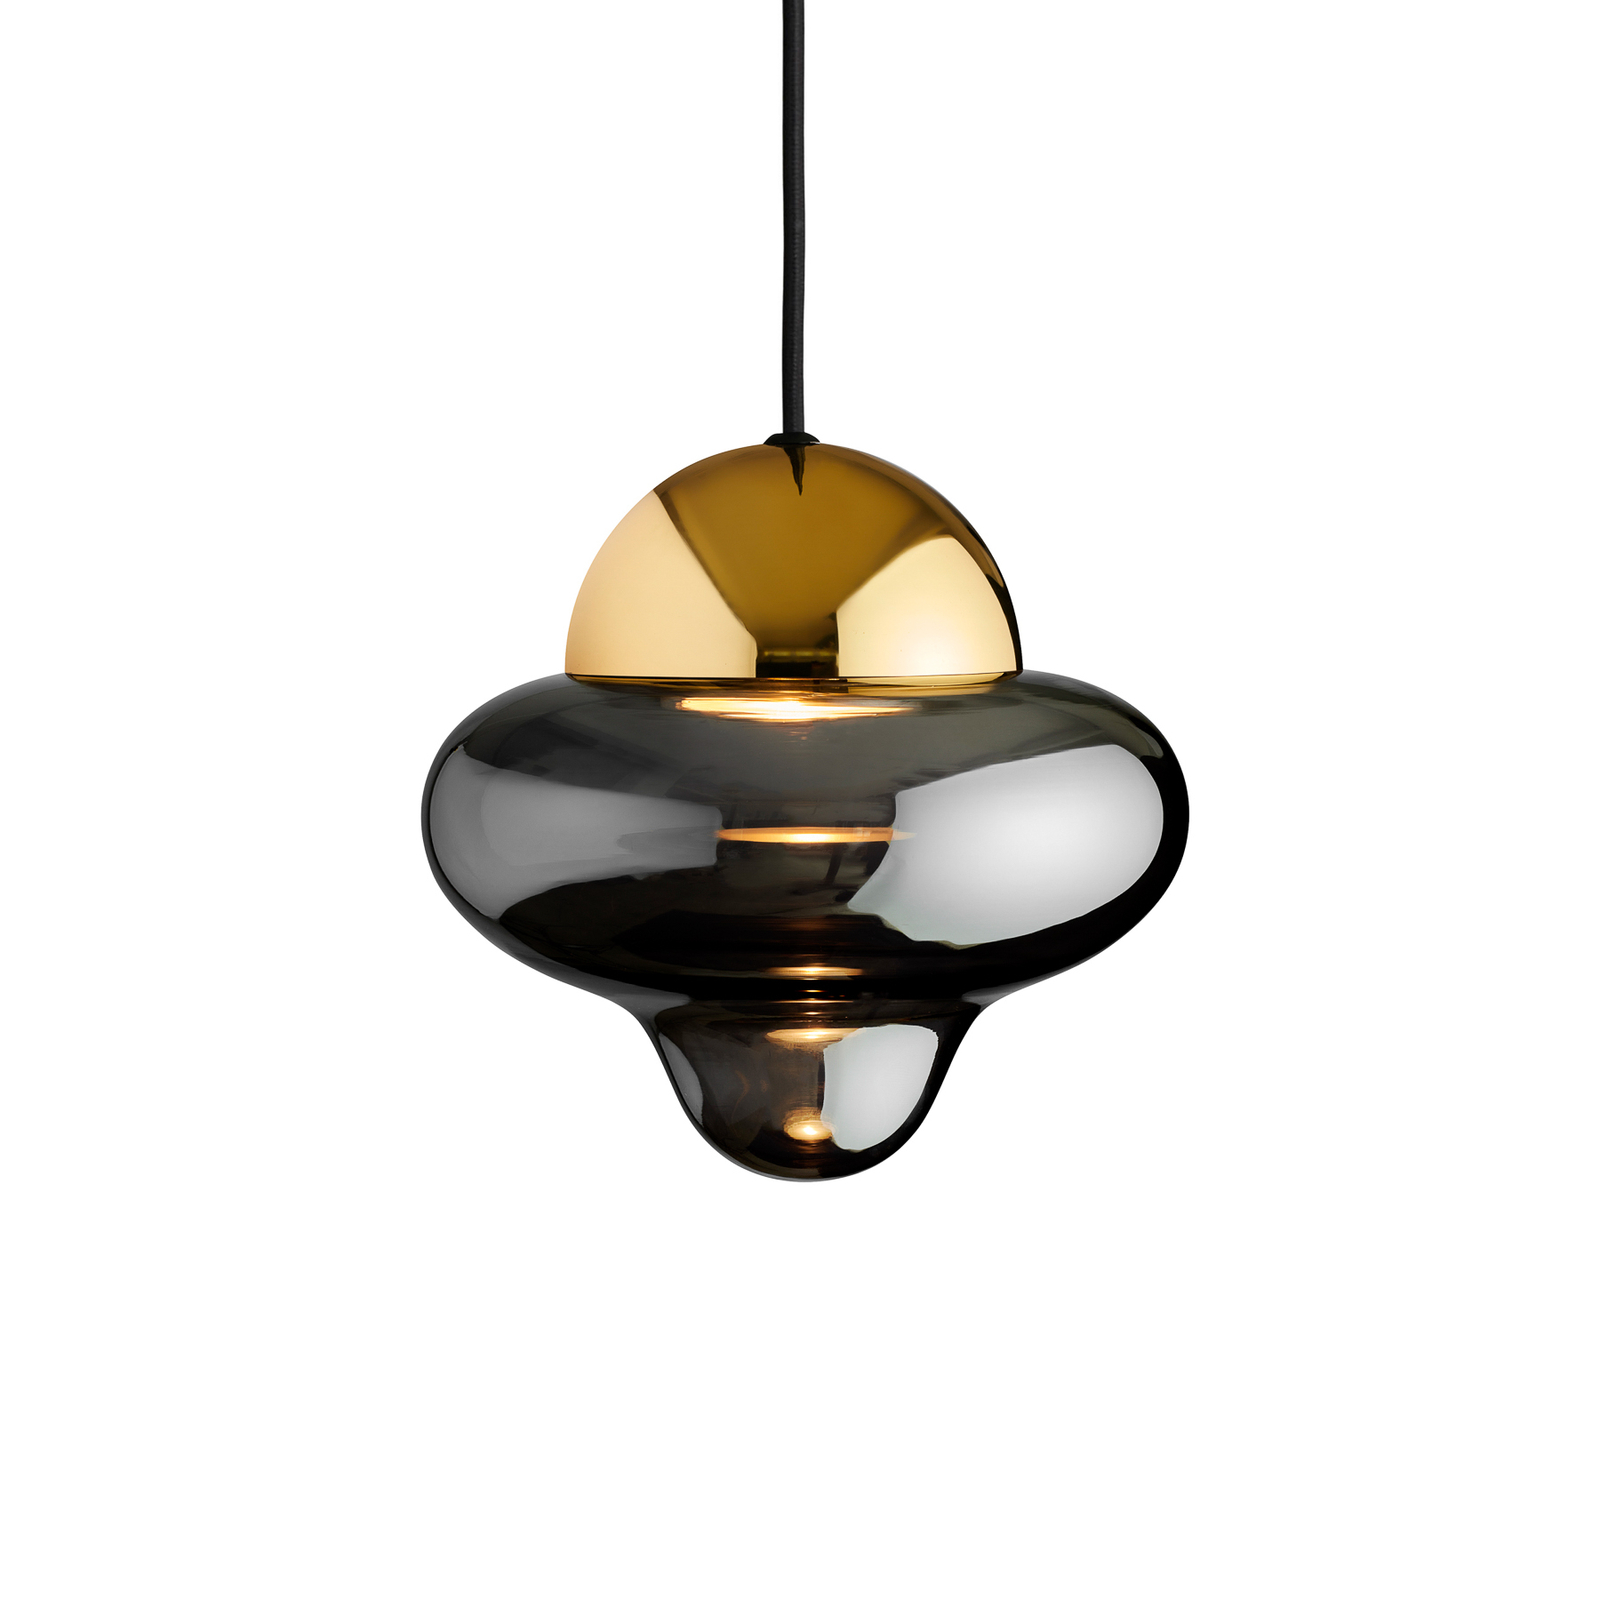 LED pendant light Nutty, smoke grey / gold, Ø 18.5 cm, glass